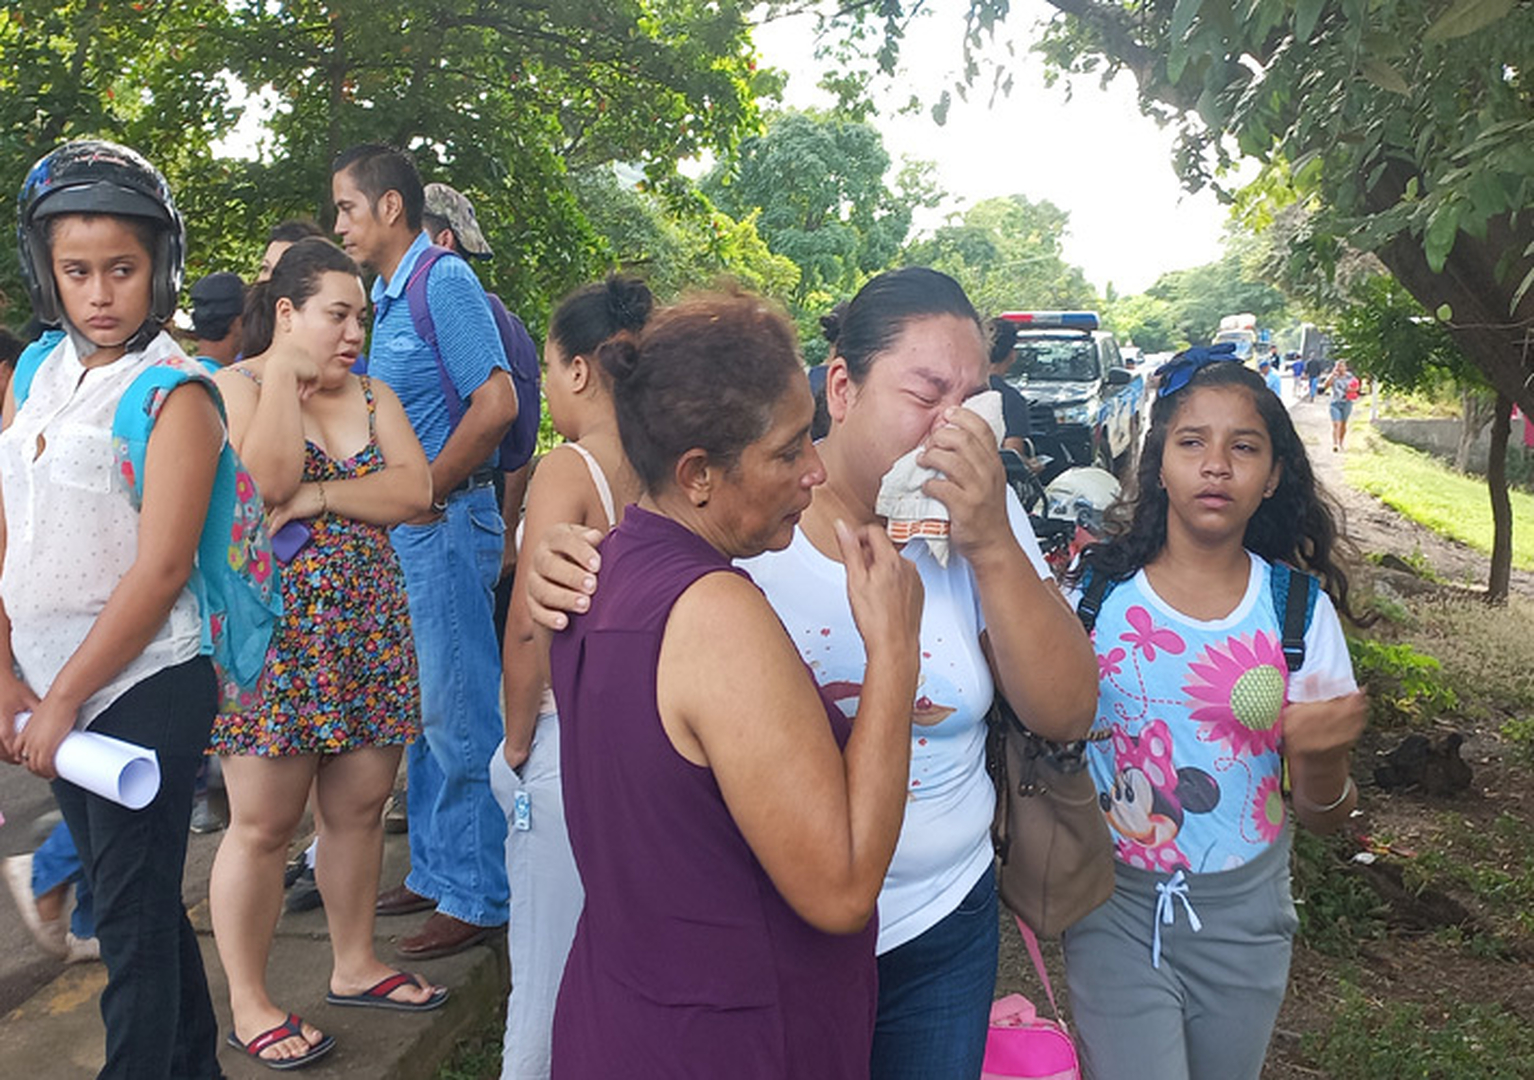 La comunidad de La Palma está de luto y piden a las autoridades coloquen reductores de velocidad en el área cercana a la escuela para evitar este tipo de tragedias.